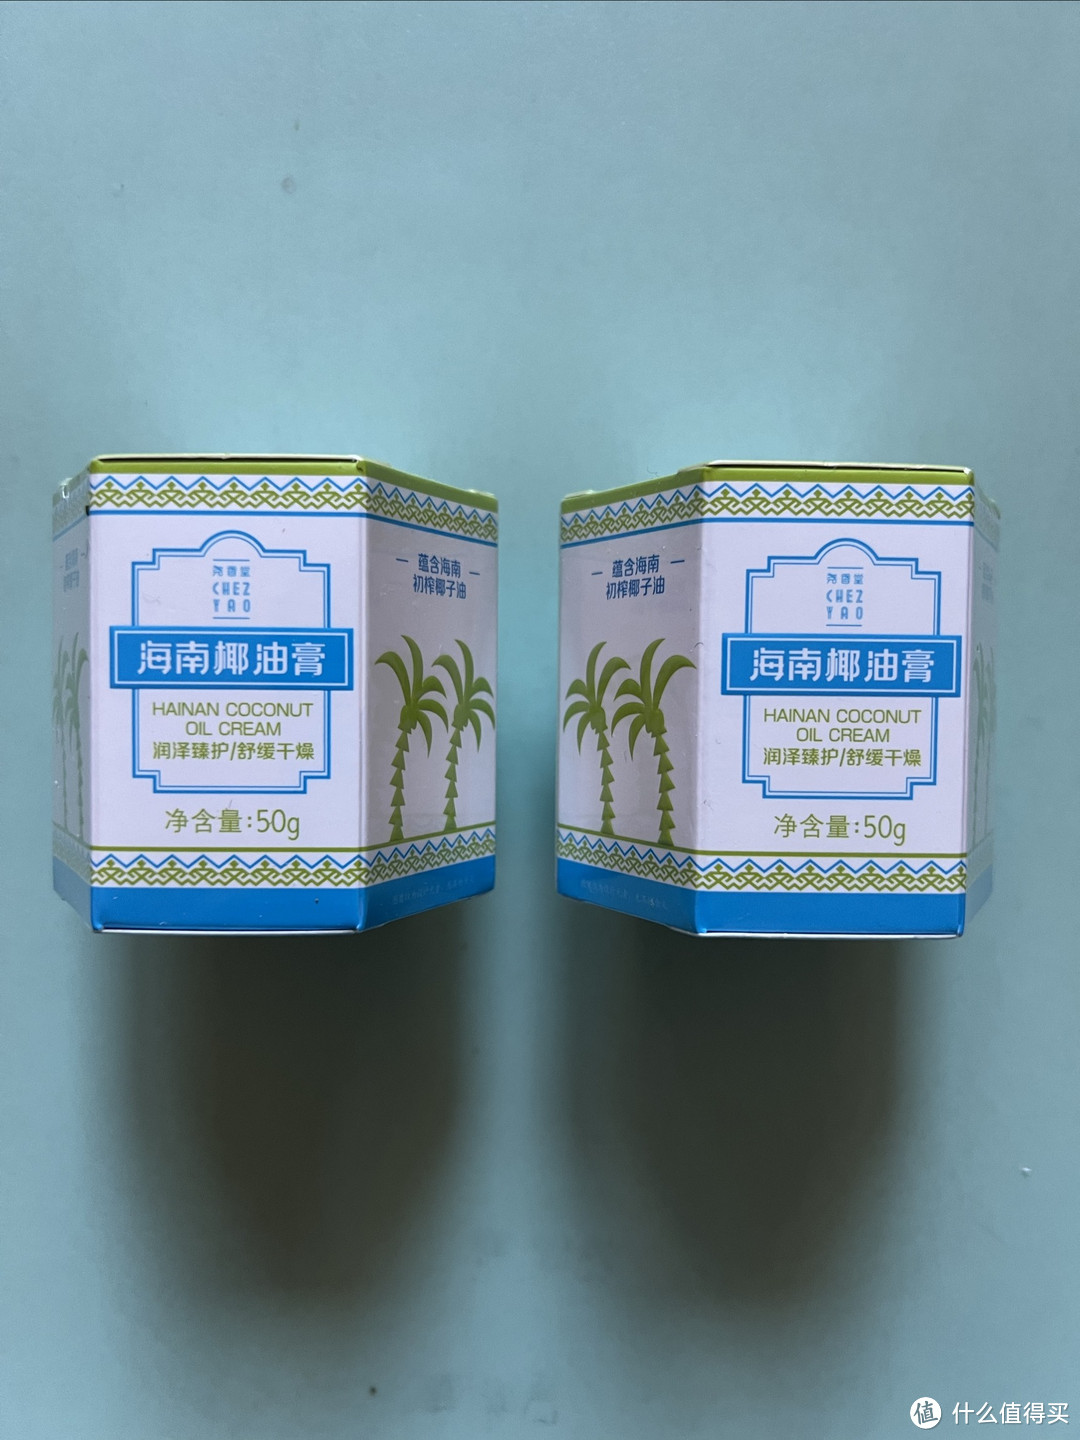 海南椰油膏—国货之光